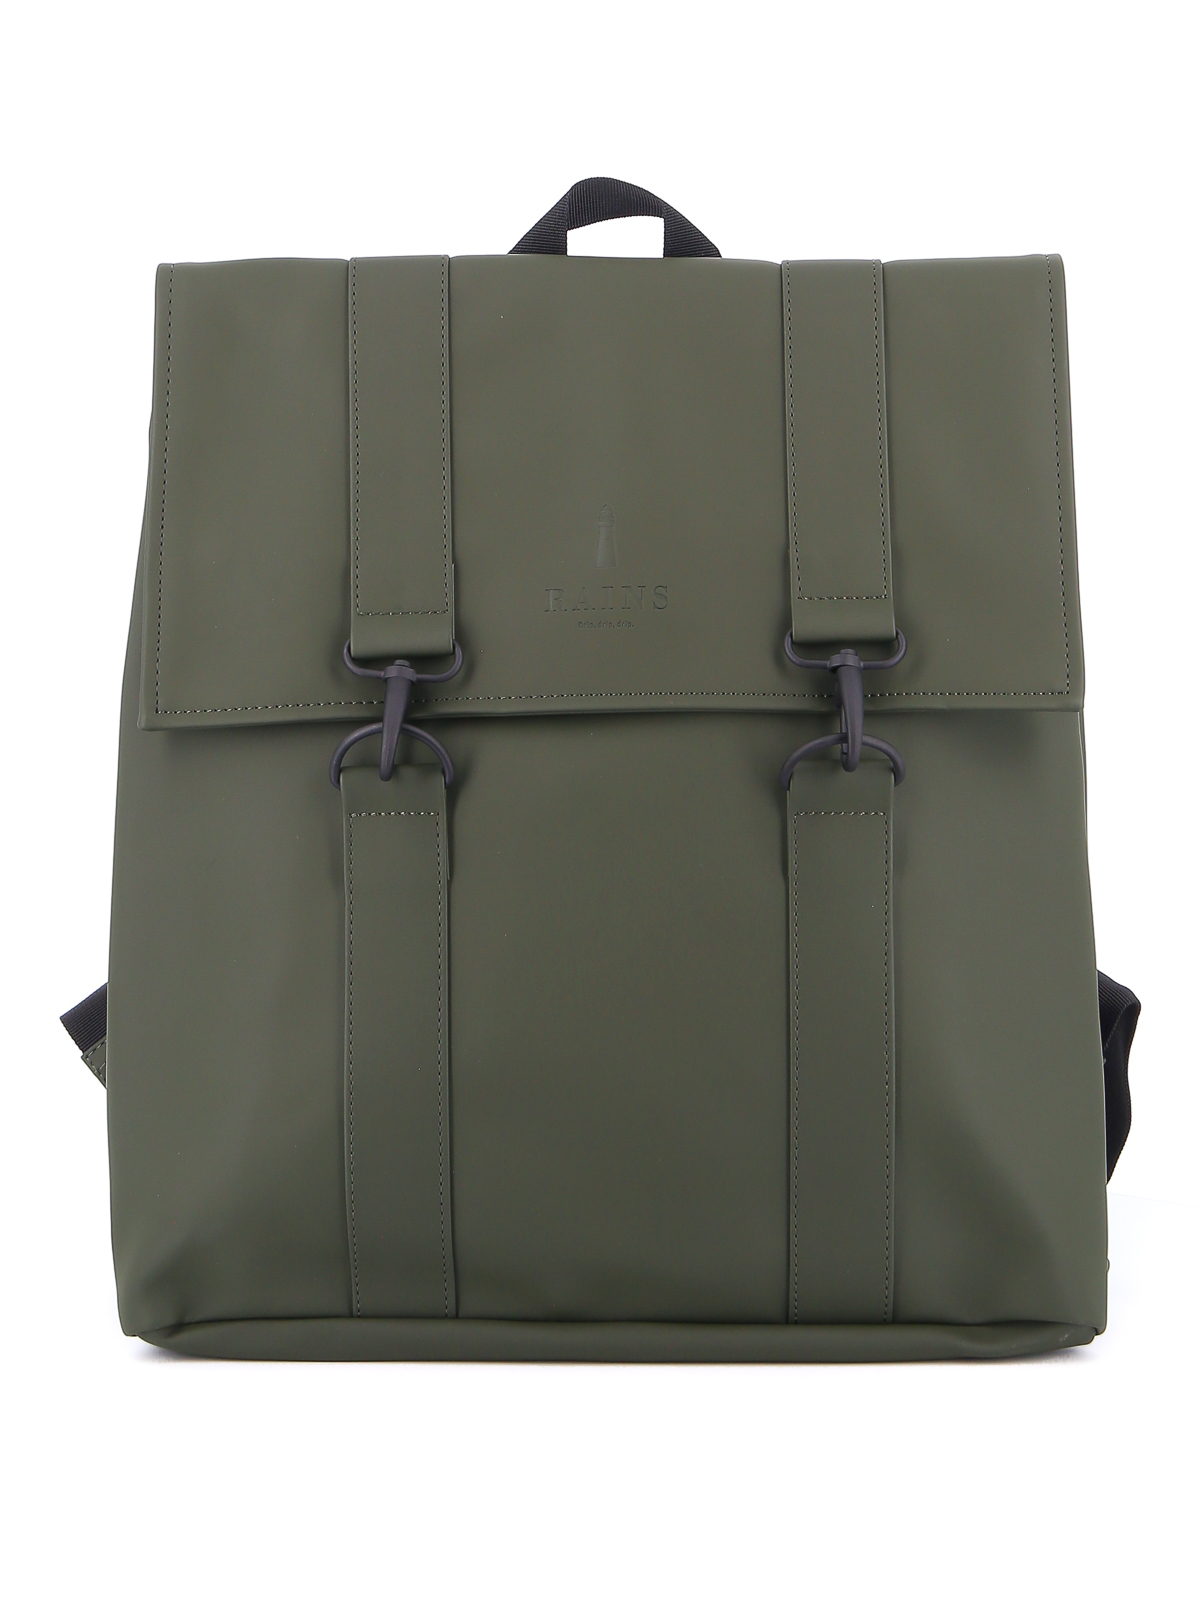 Backpacks Rains - Msn Bag backpack - 1213GREEN | Shop online at iKRIX